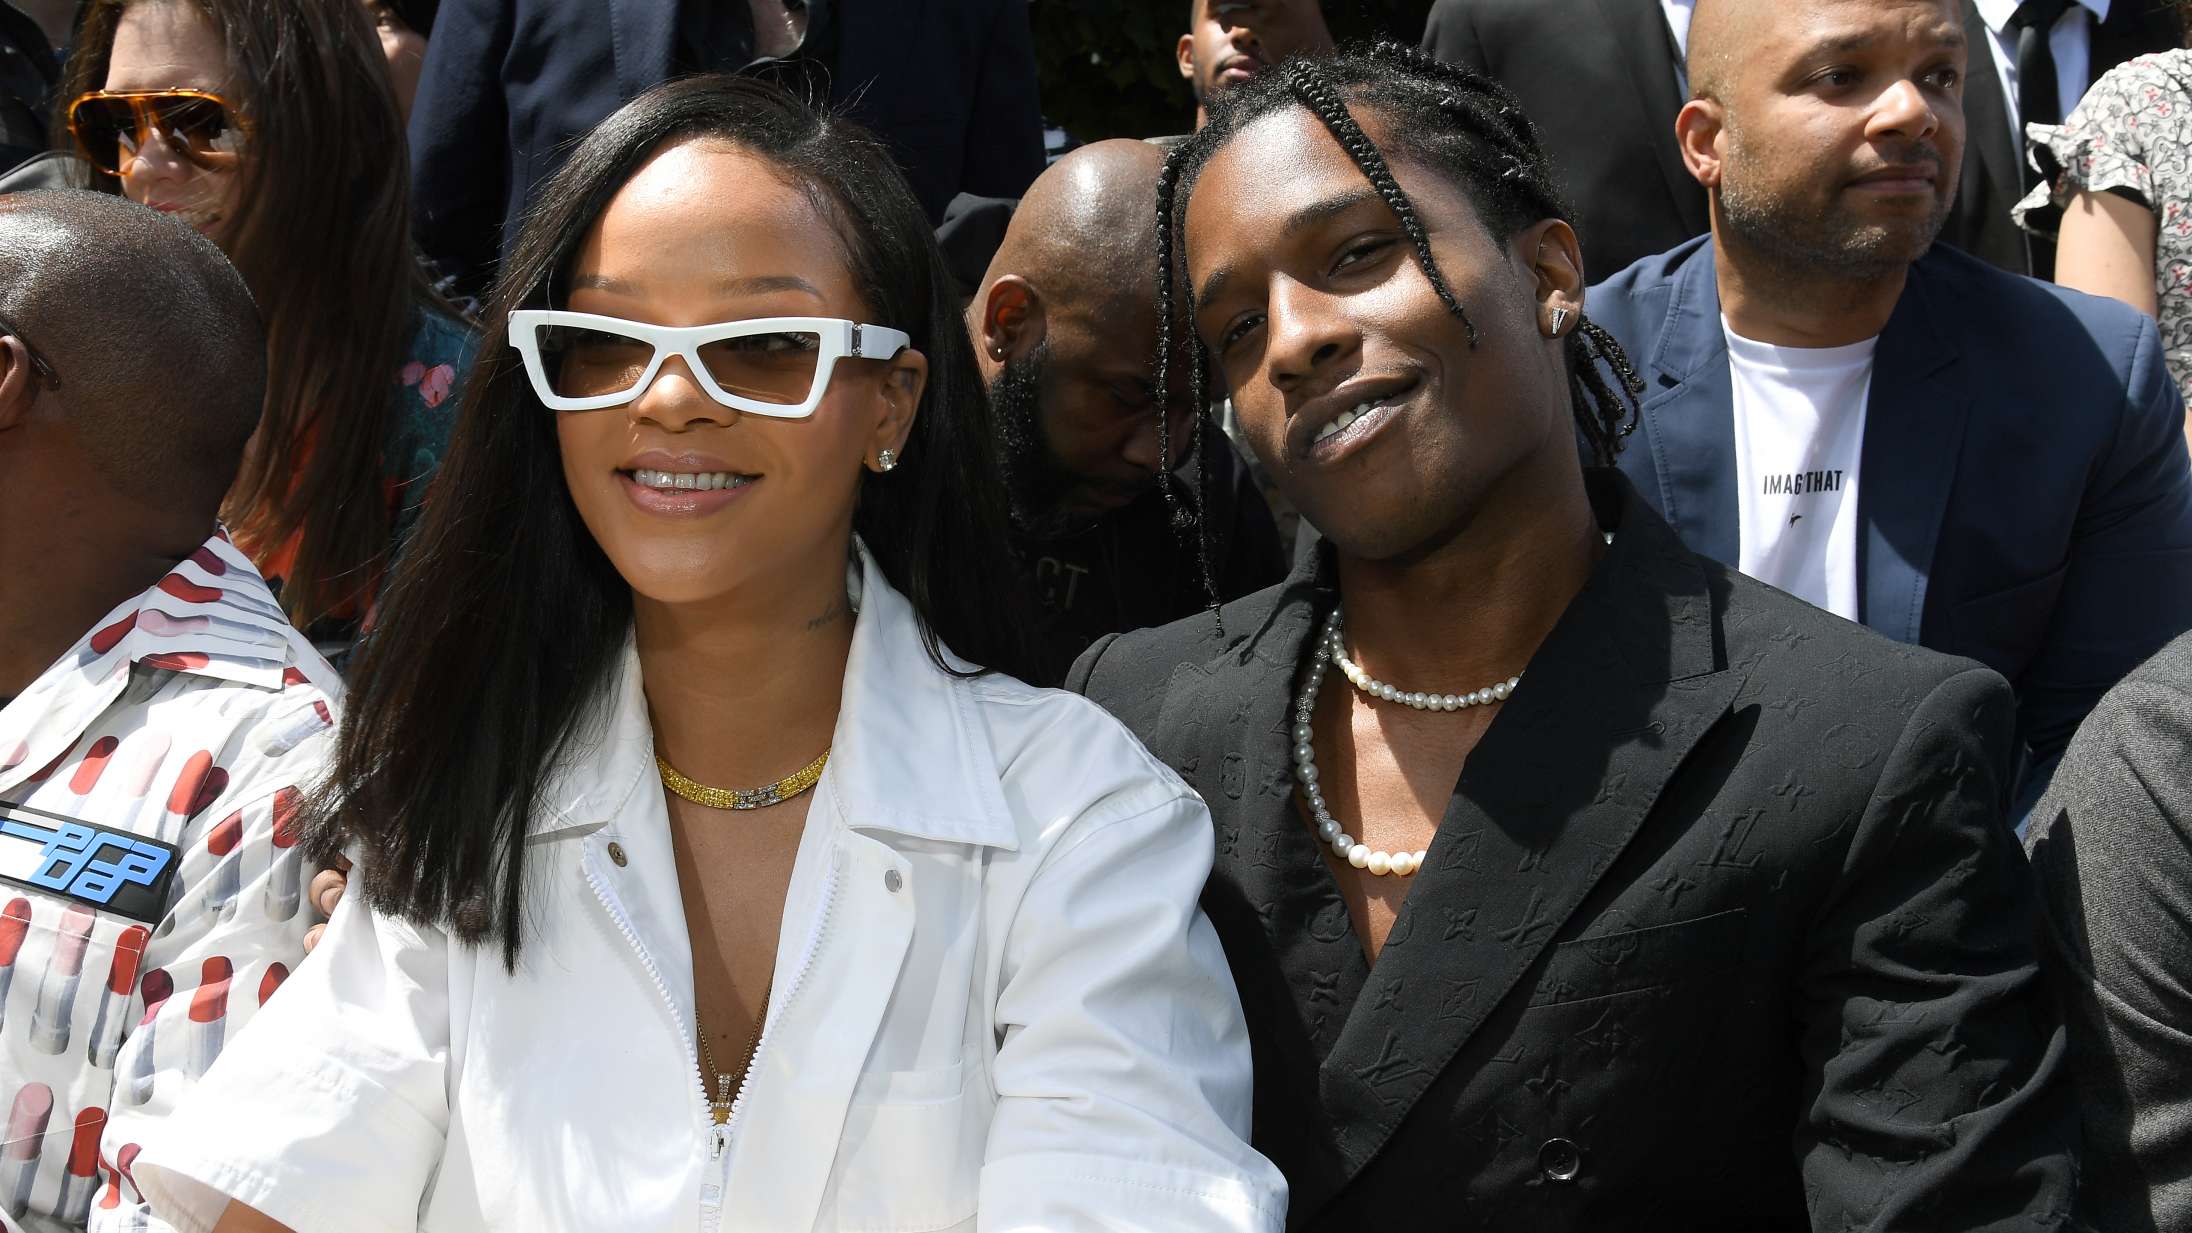 Det ser ud til, at Rihanna og ASAP Rocky er ved at skyde en musikvideo sammen